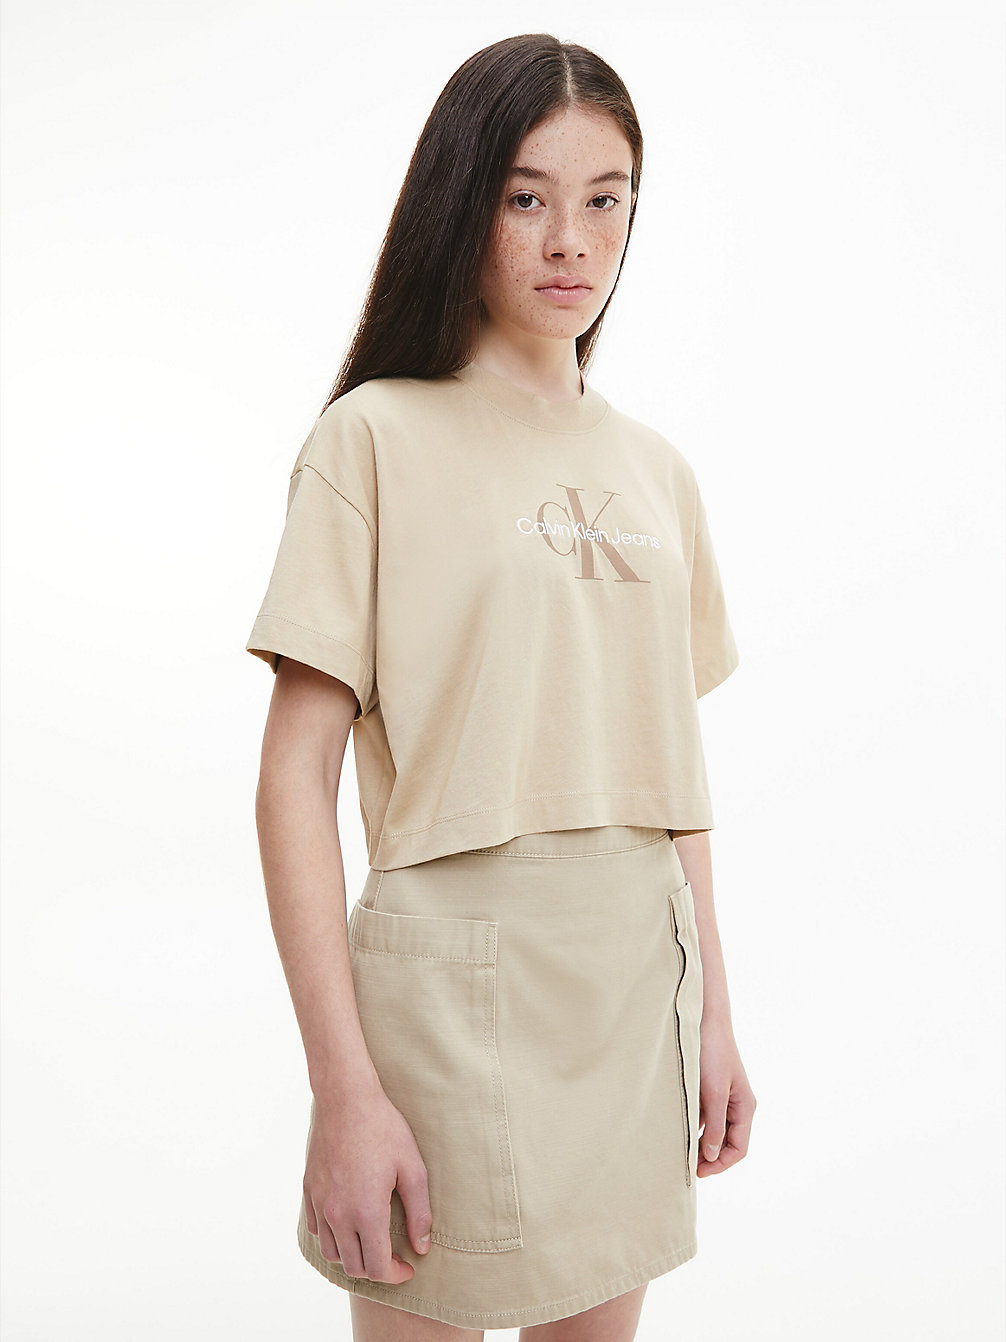 TRAVERTINE > Укороченная футболка с монограммой > undefined Женщины - Calvin Klein